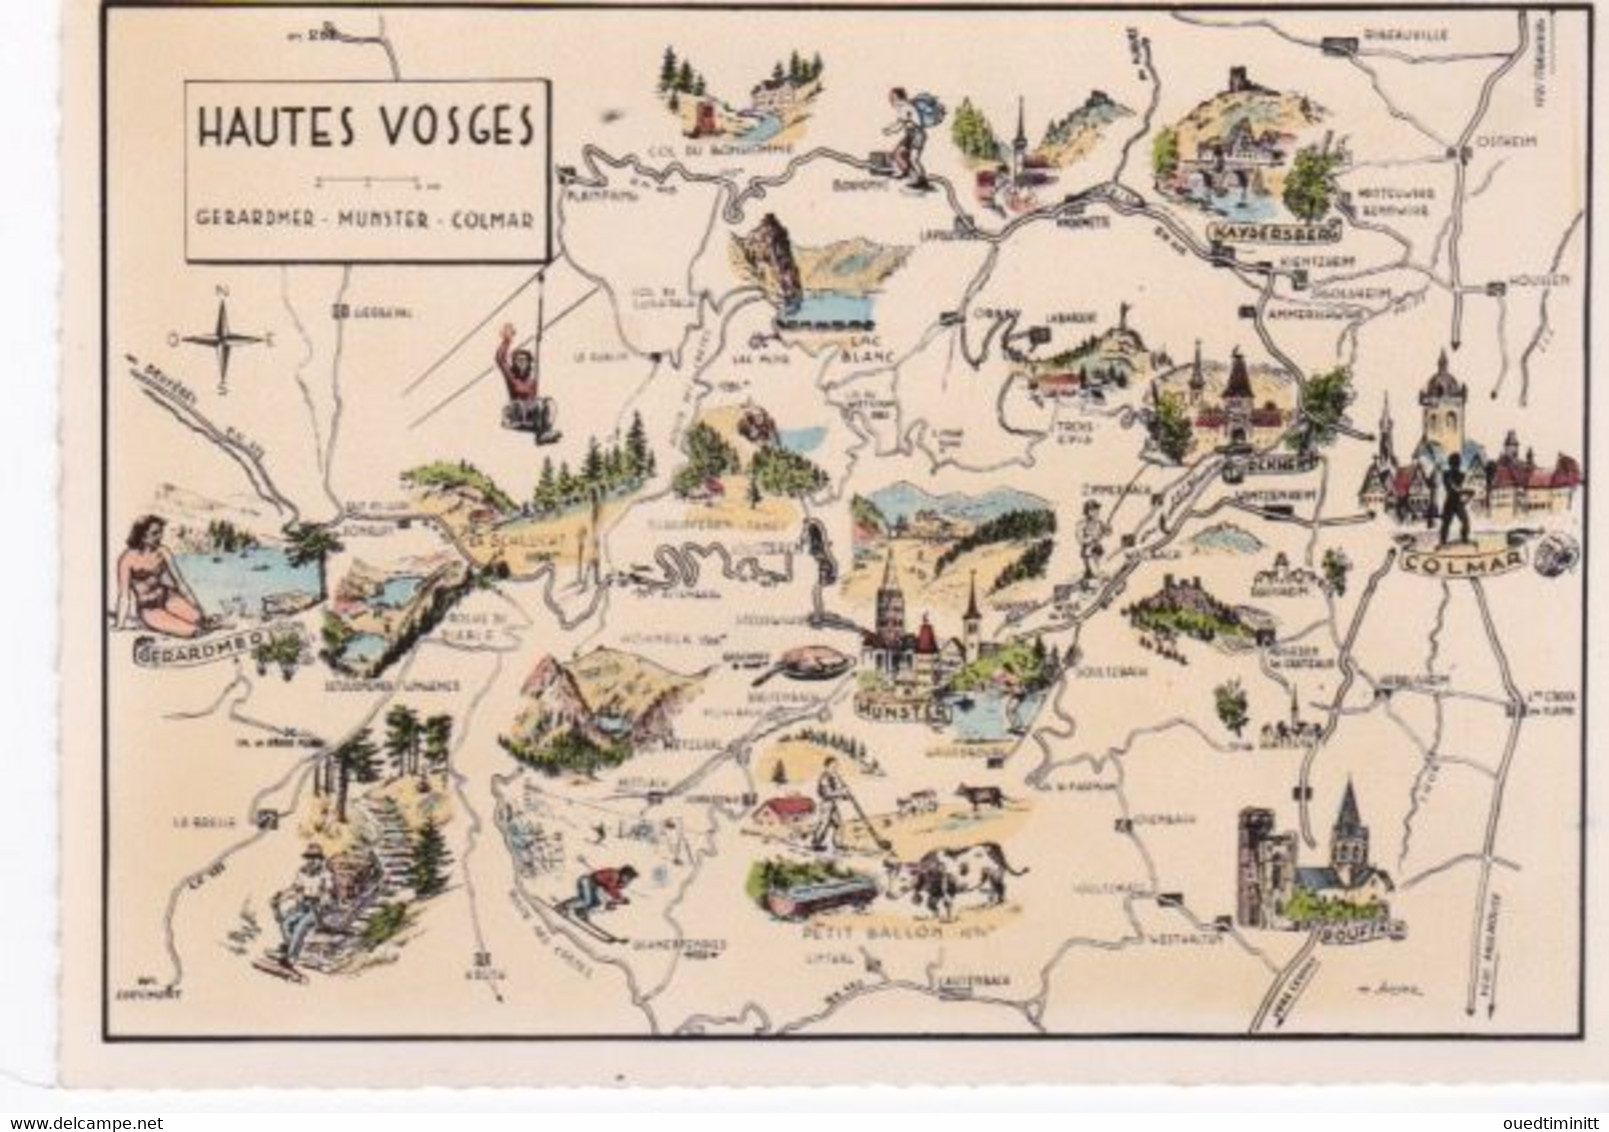 Carte Géographique Des Hautes Vosges, Gerardmer, Munster, Colmar, Cpsm Dentelée - Landkarten